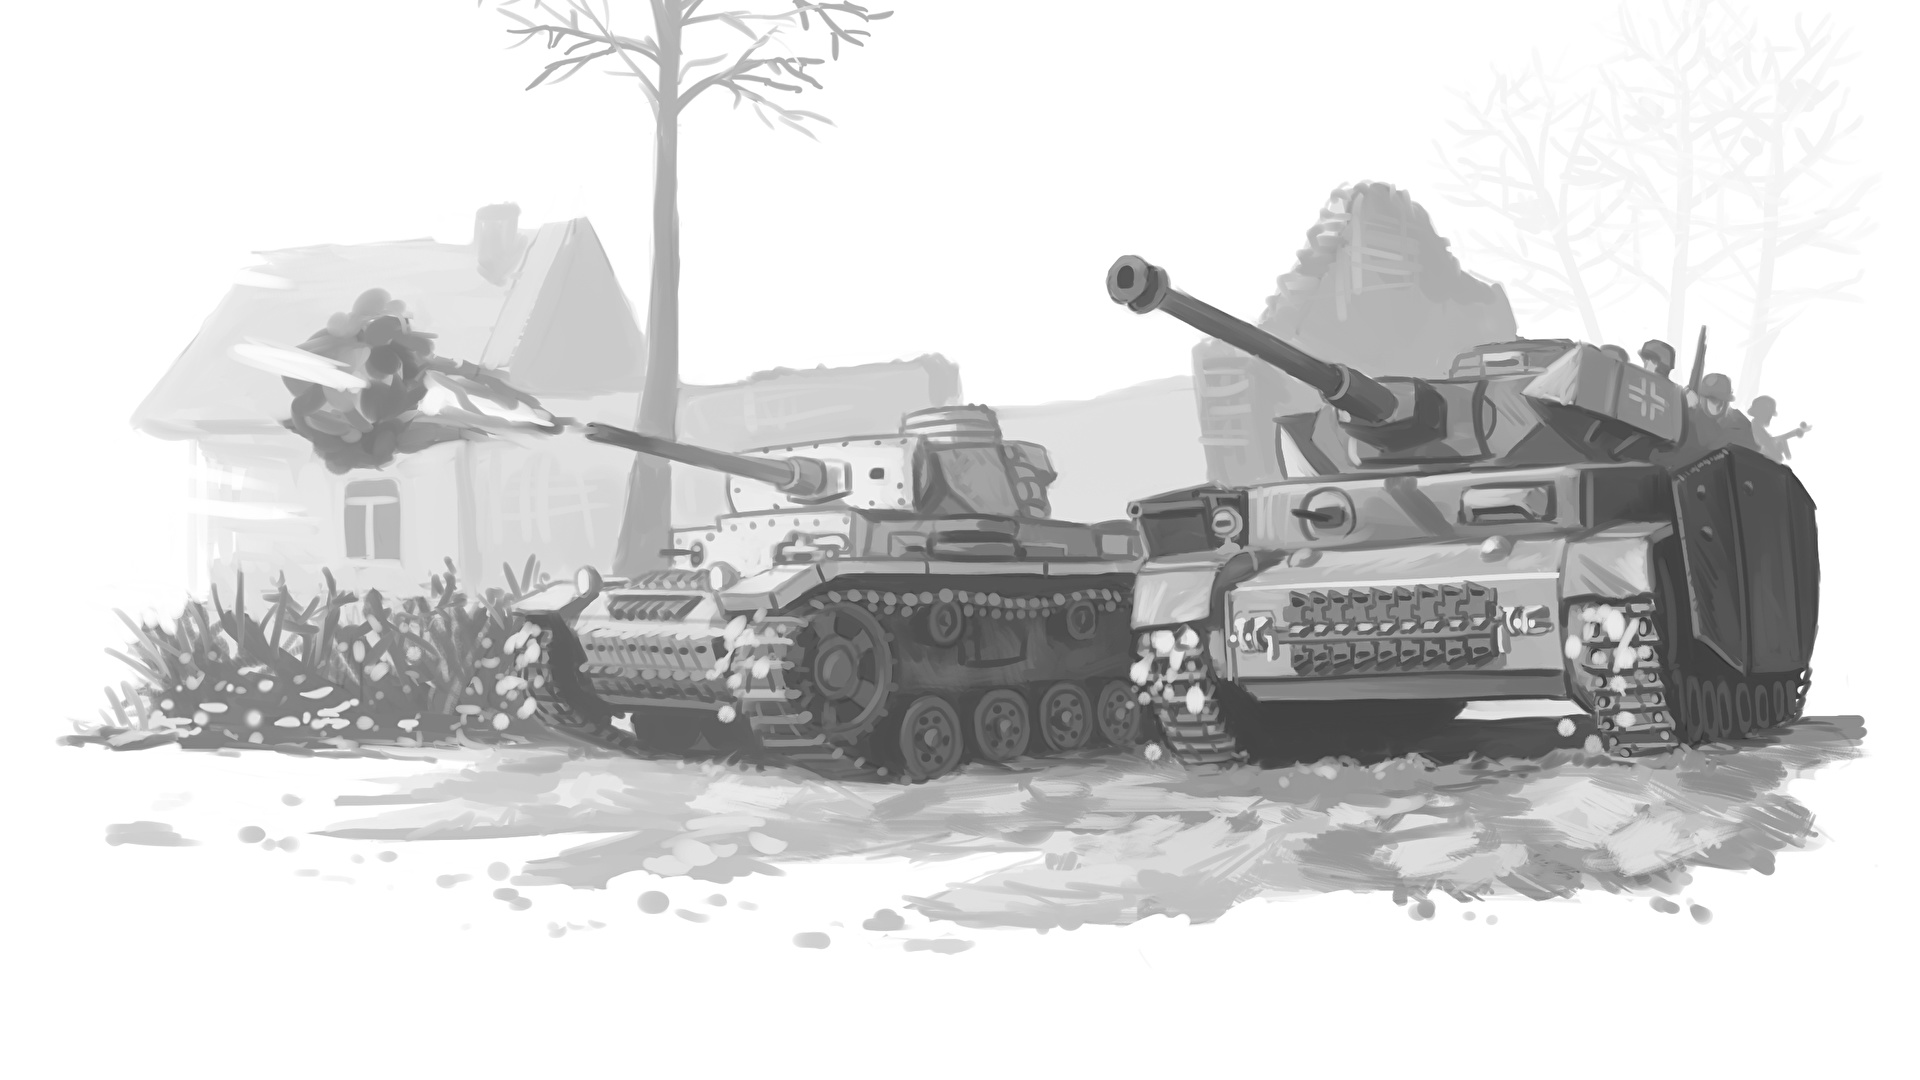 壁紙 1920x1080 戦車 描かれた壁紙 白黒 ドイツ語 発射 陸軍 ダウンロード 写真